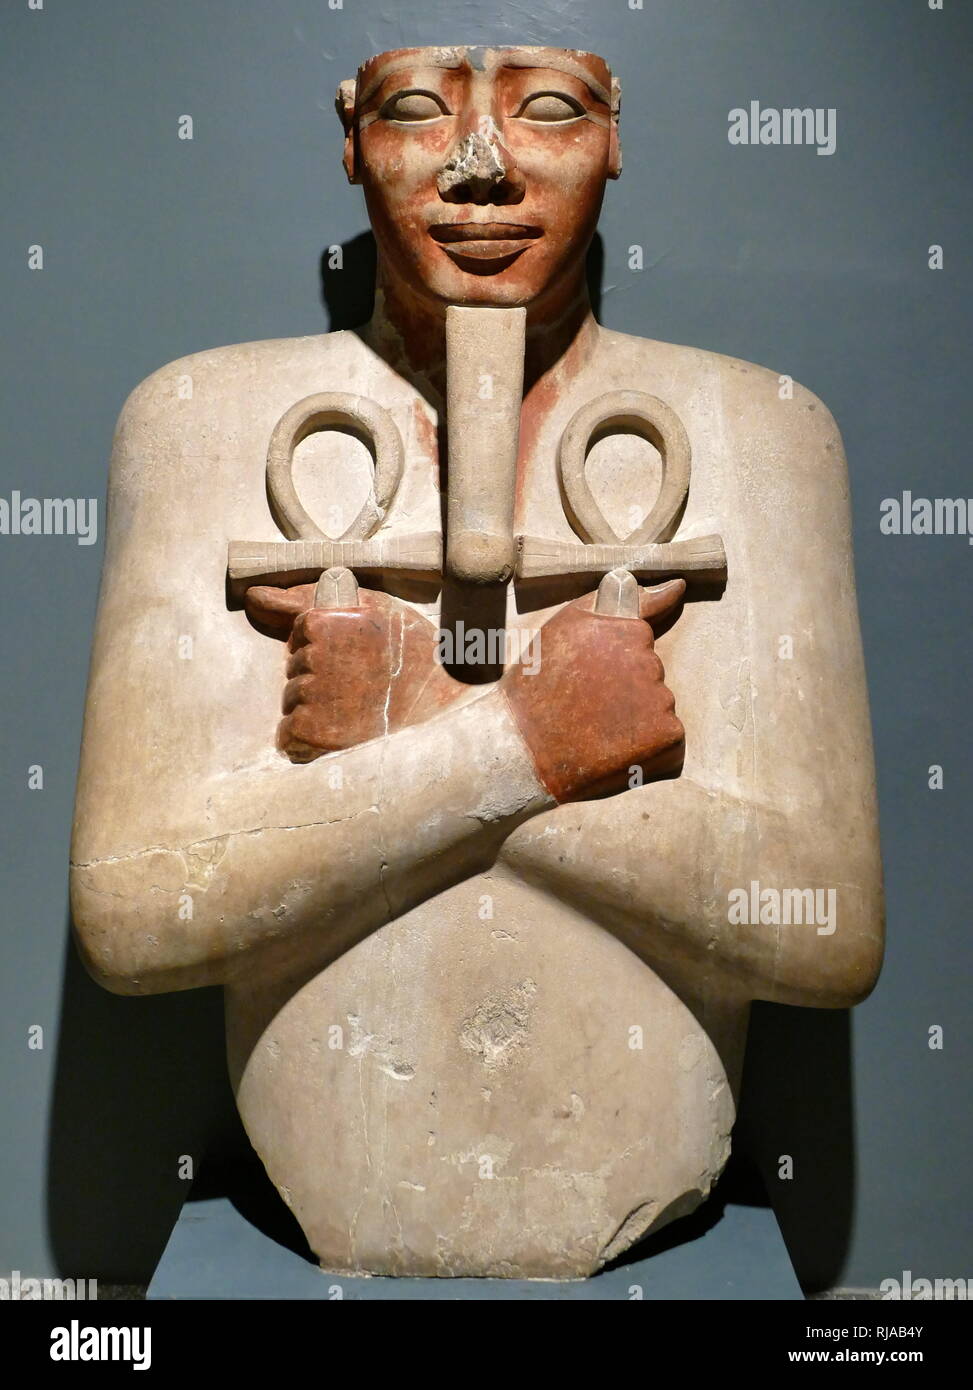 Pilier Osiride statue de pharaon Sésostris I d'Égypte. Empire du Milieu. Pierre calcaire ; 1926 BC. Le Roi est représenté comme Osiris, dieu des morts, et souverain du monde souterrain. Il est titulaire de l'ankh, utilisé dans l'Egypte ancienne comme un symbole de vie. Sésostris I, (Sésostris I et Senwosret I), a été le deuxième pharaon de la xiie dynastie égyptienne. Il règne de 1971 à 1926 av. J.-C.-B. Banque D'Images